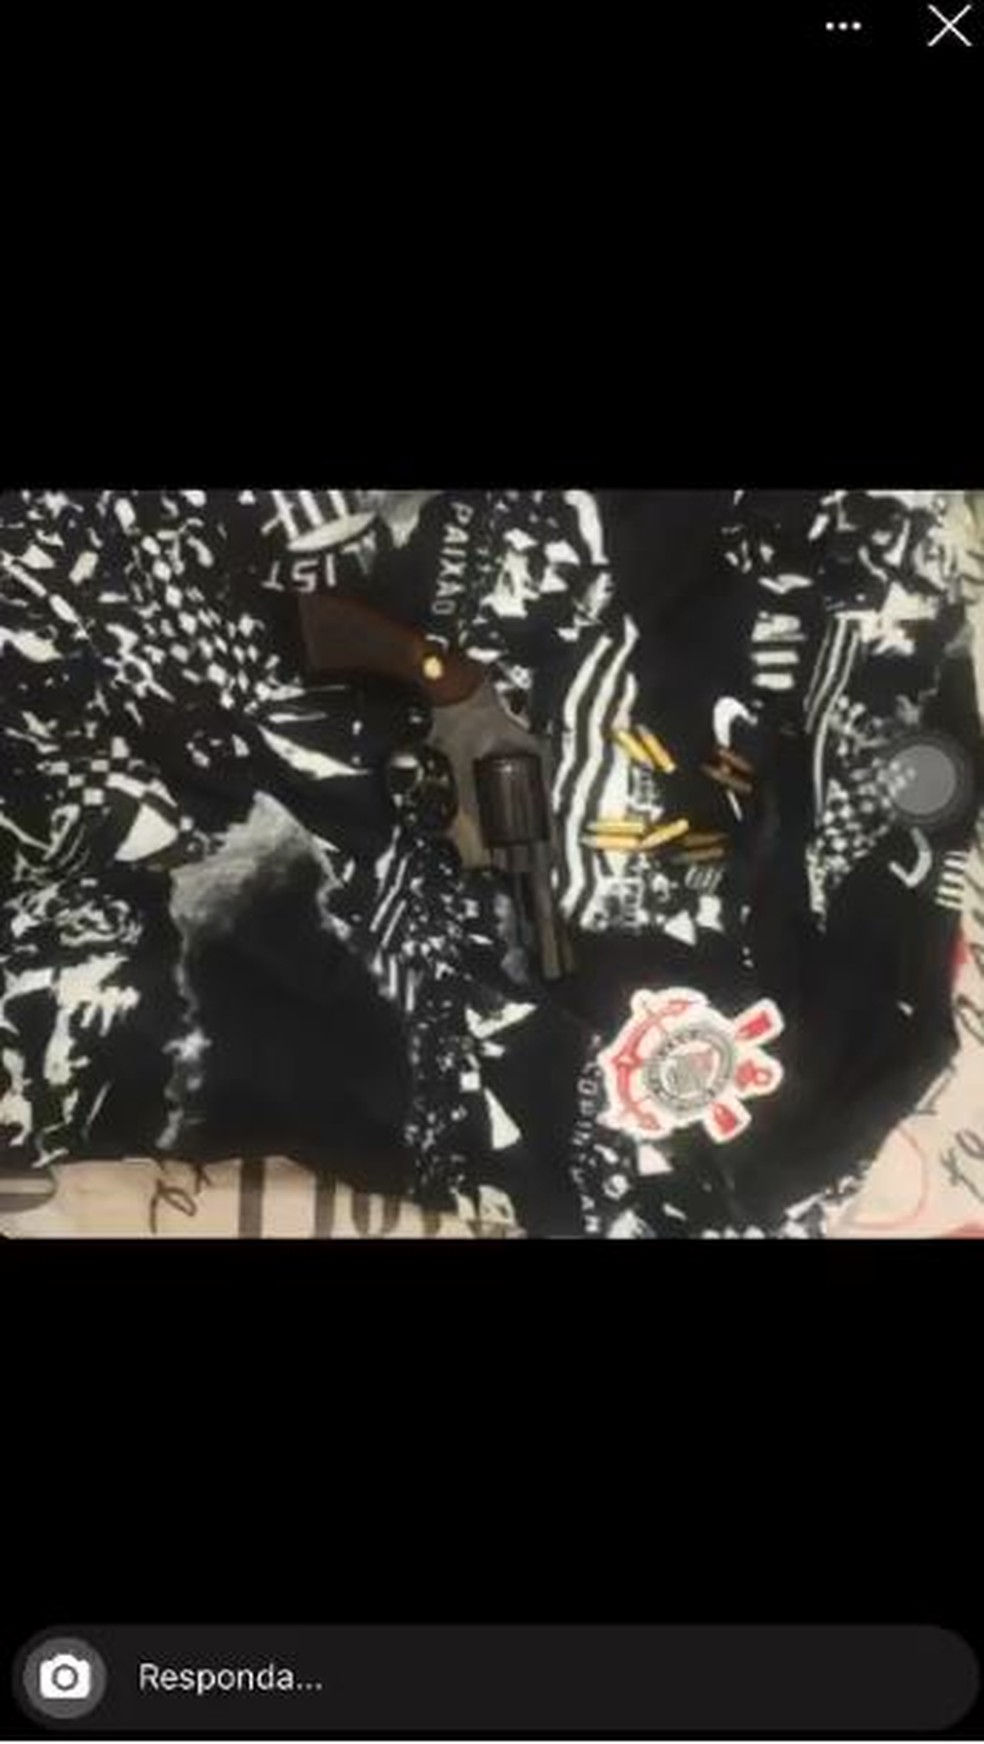 Ameaça a Cássio, do Corinthians, tem foto de arma sobre camiseta do clube — Foto: Reprodução